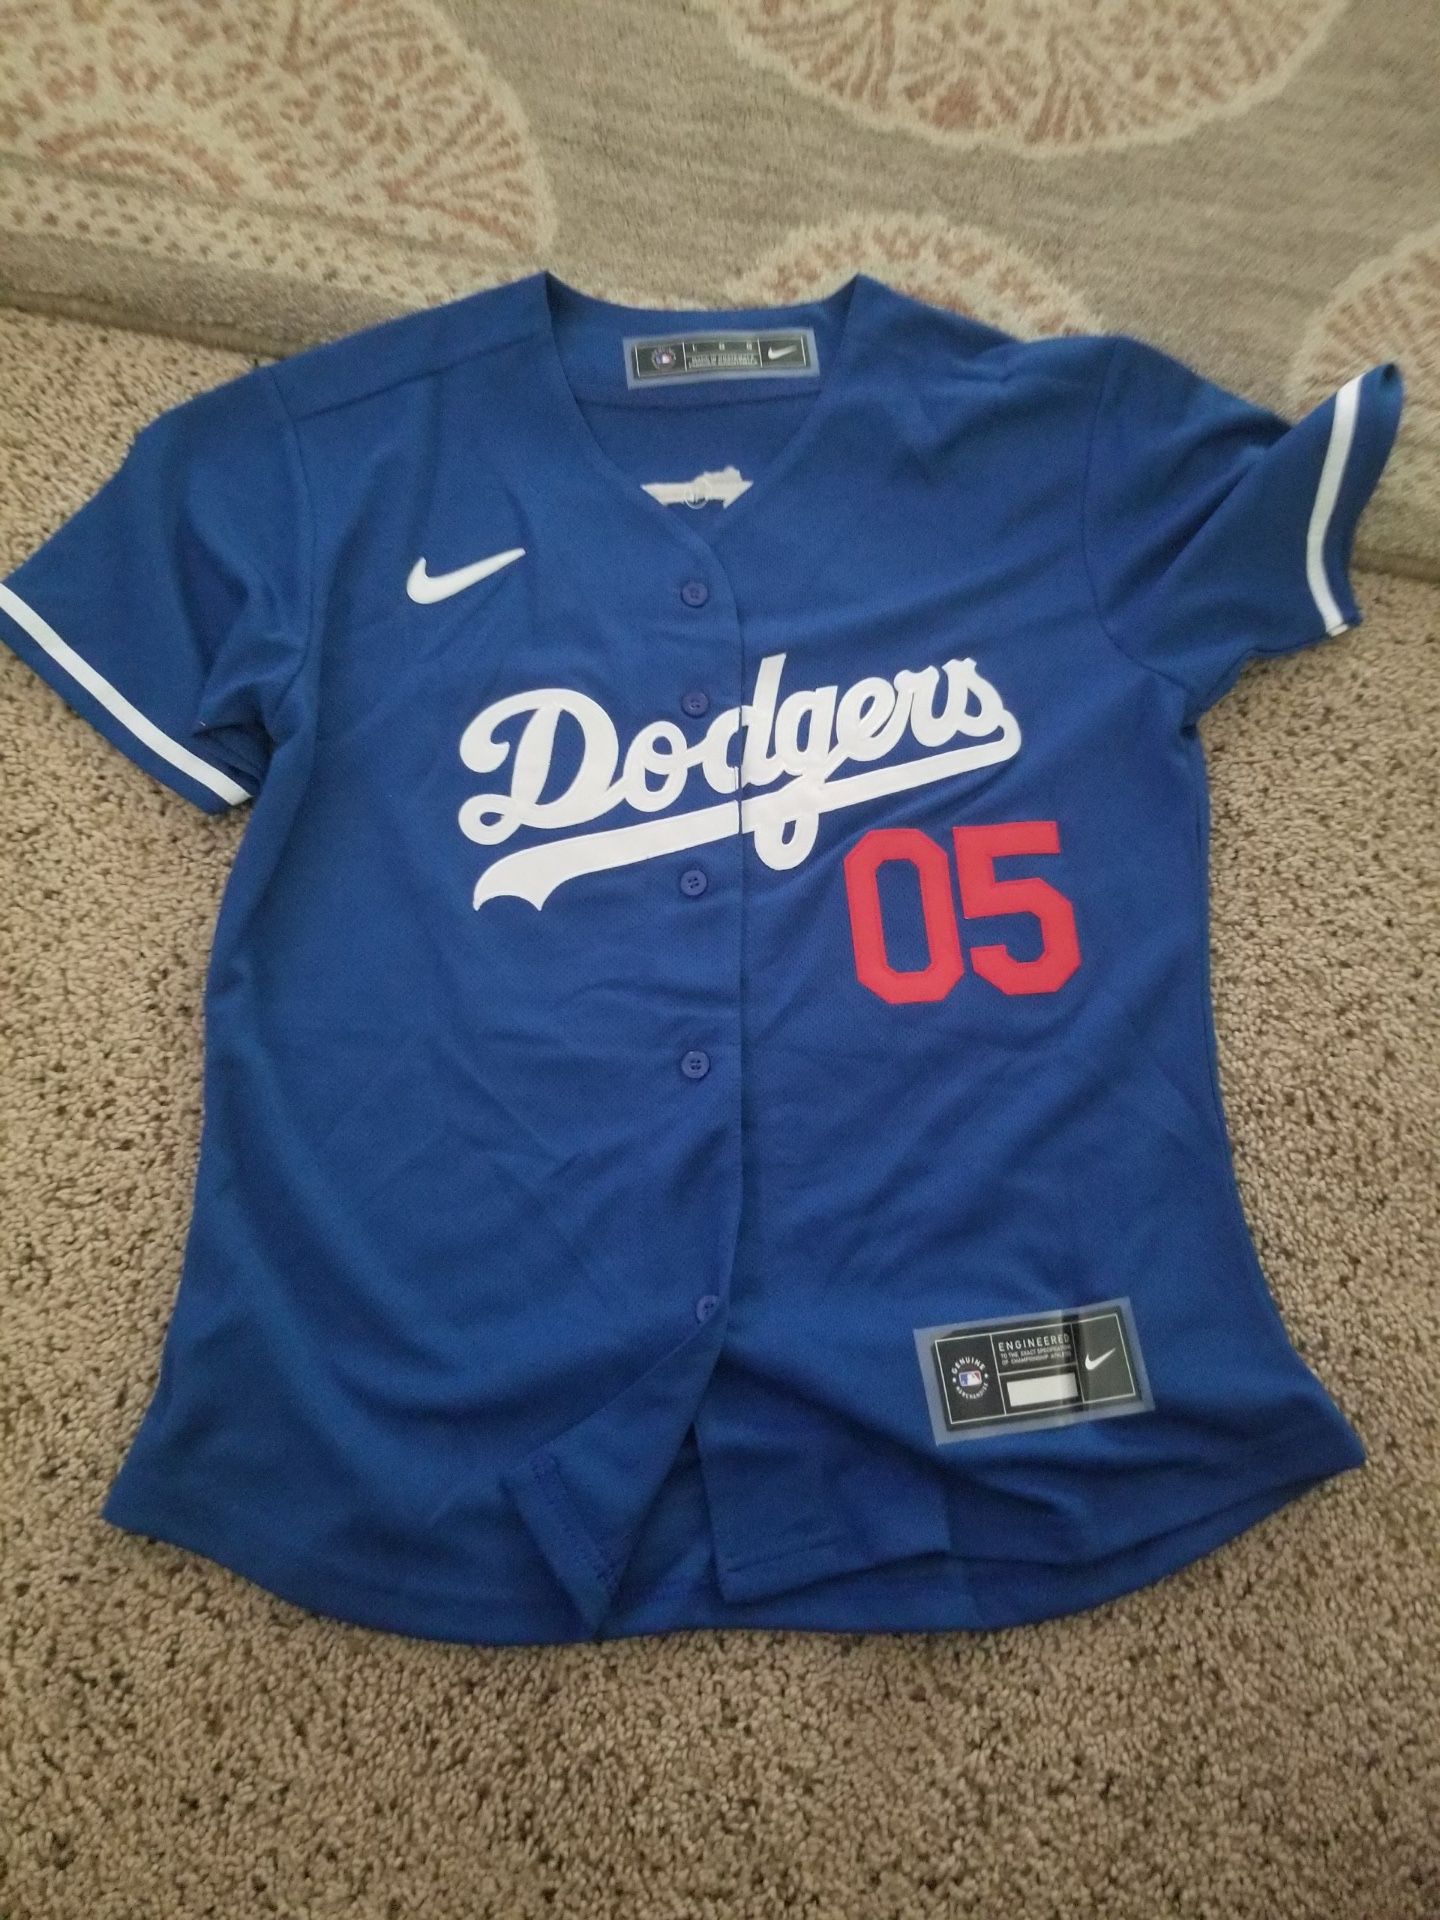 Custom Dodgers Jersey for Sale in La Habra Heights, CA - OfferUp